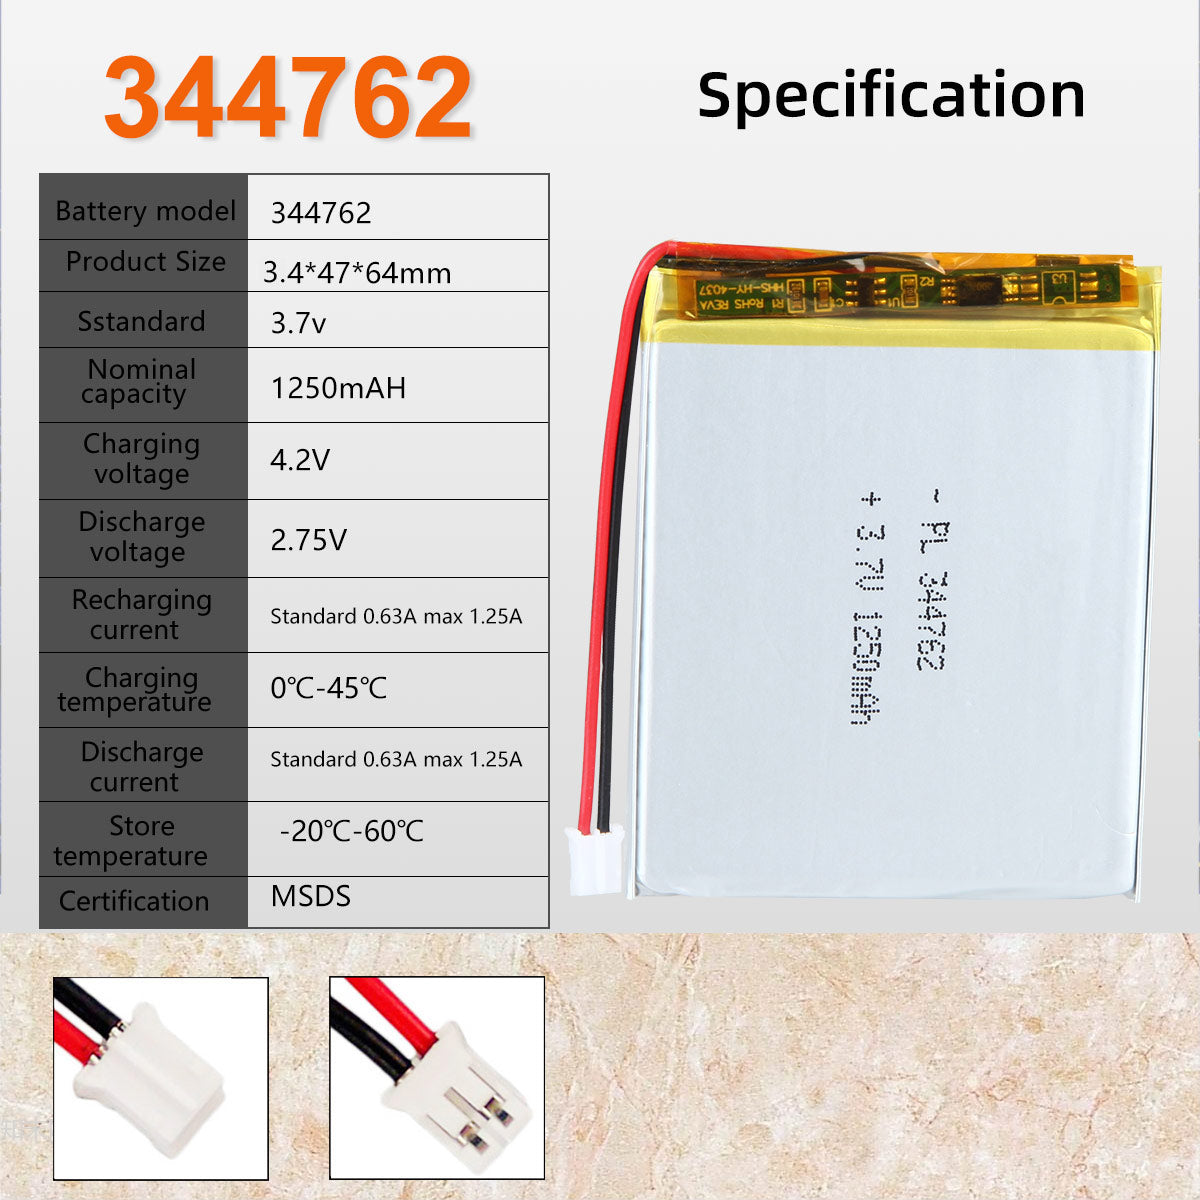 3.7V 1250mAh 344762 Batterie Lithium Polymère Rechargeable Longueur 64mm